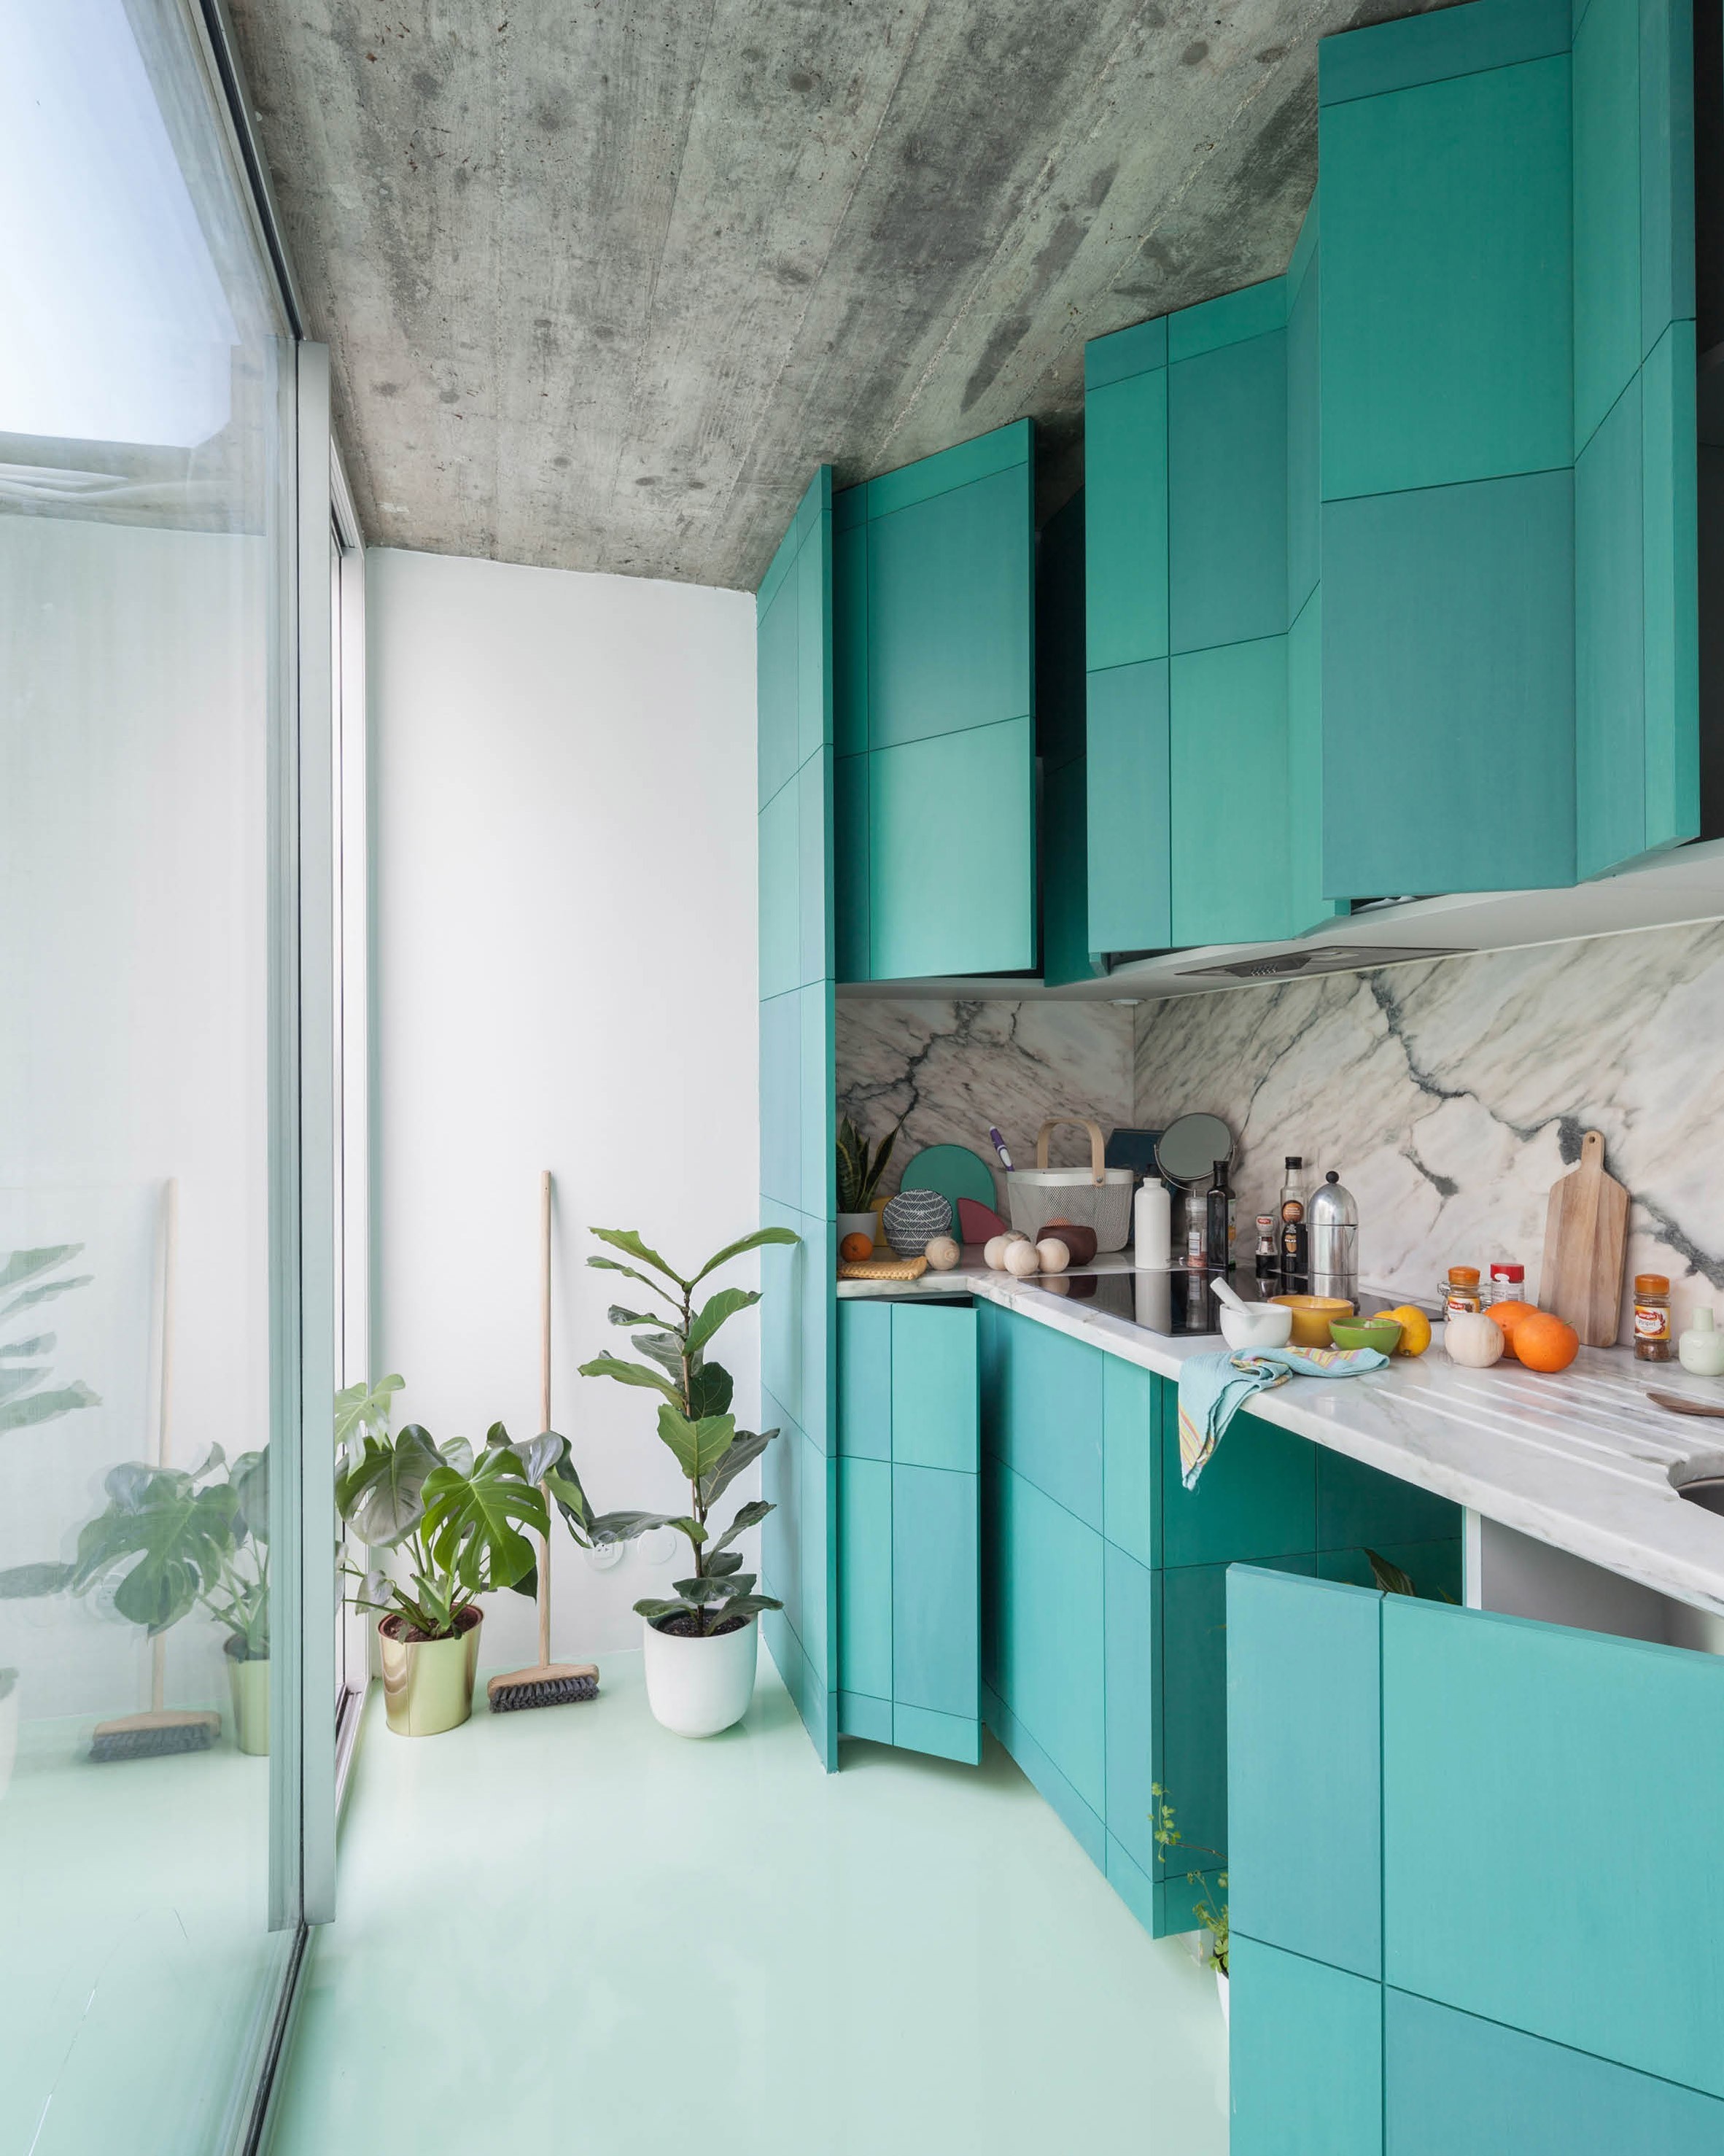 Cozinha compacta: ideias de decoração para espaços pequenos (Foto: Ricardo Loureiro)